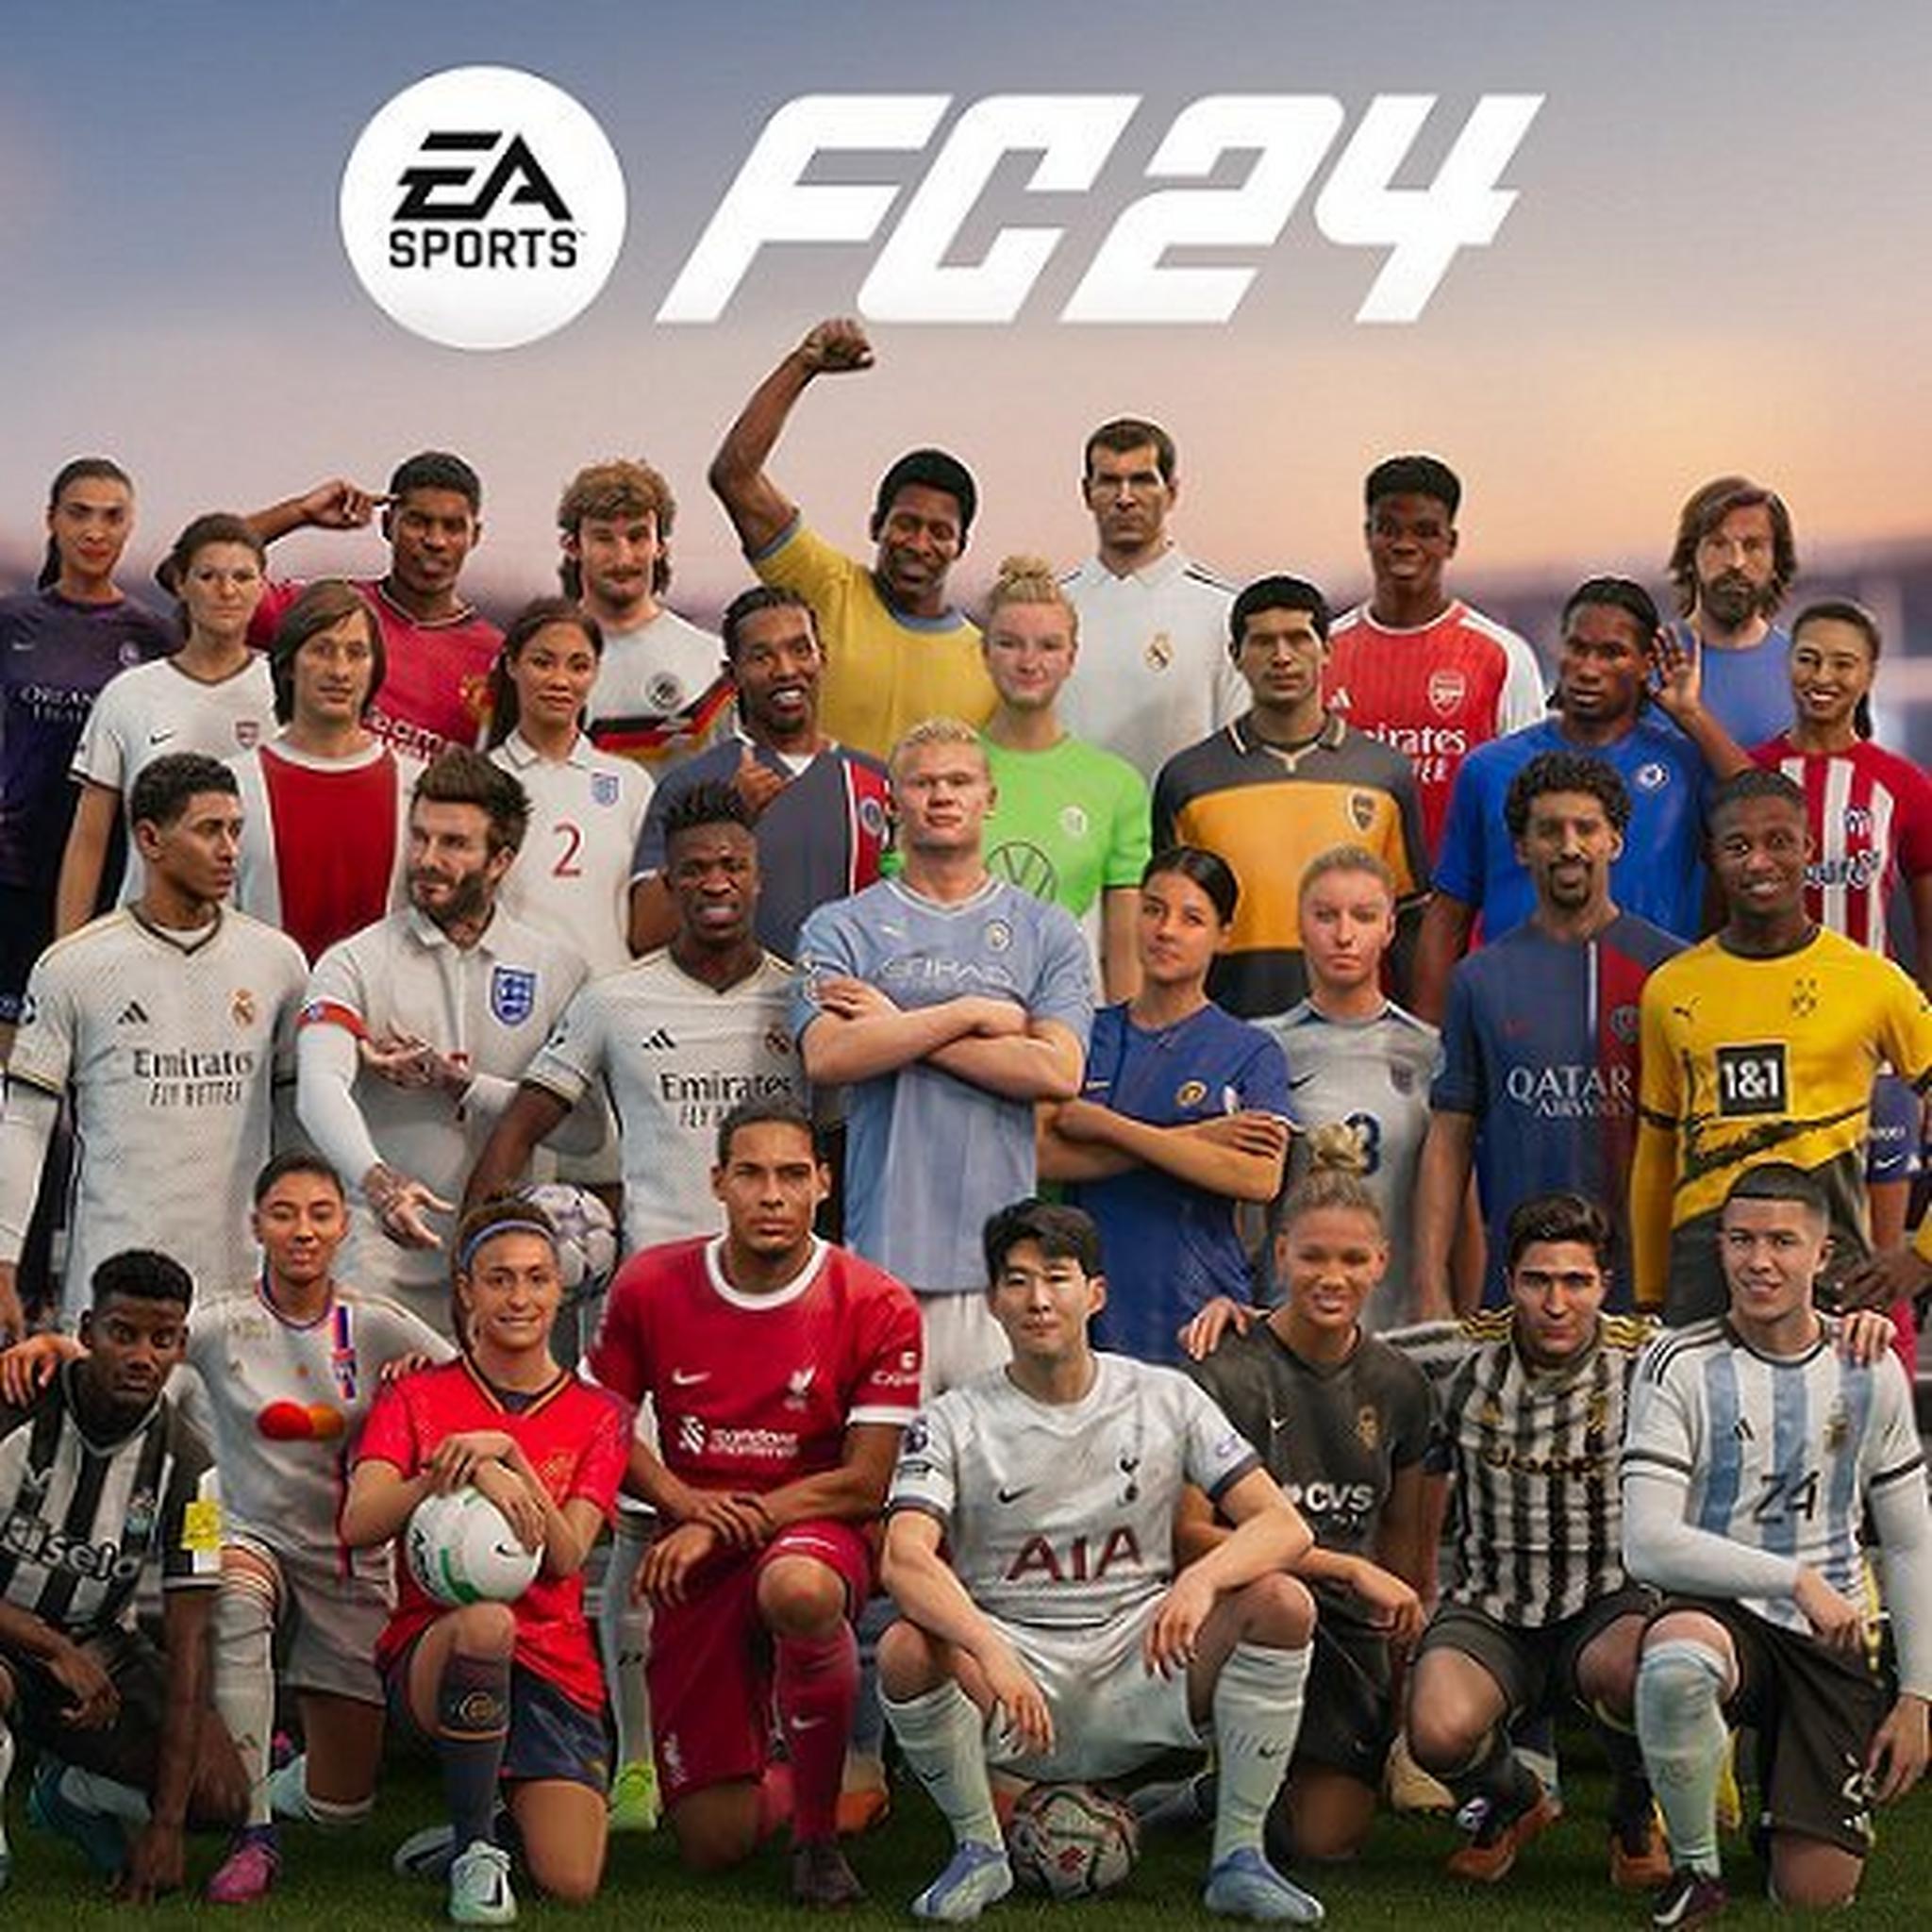 EA Sports FC 24 - Xbox X | One Game